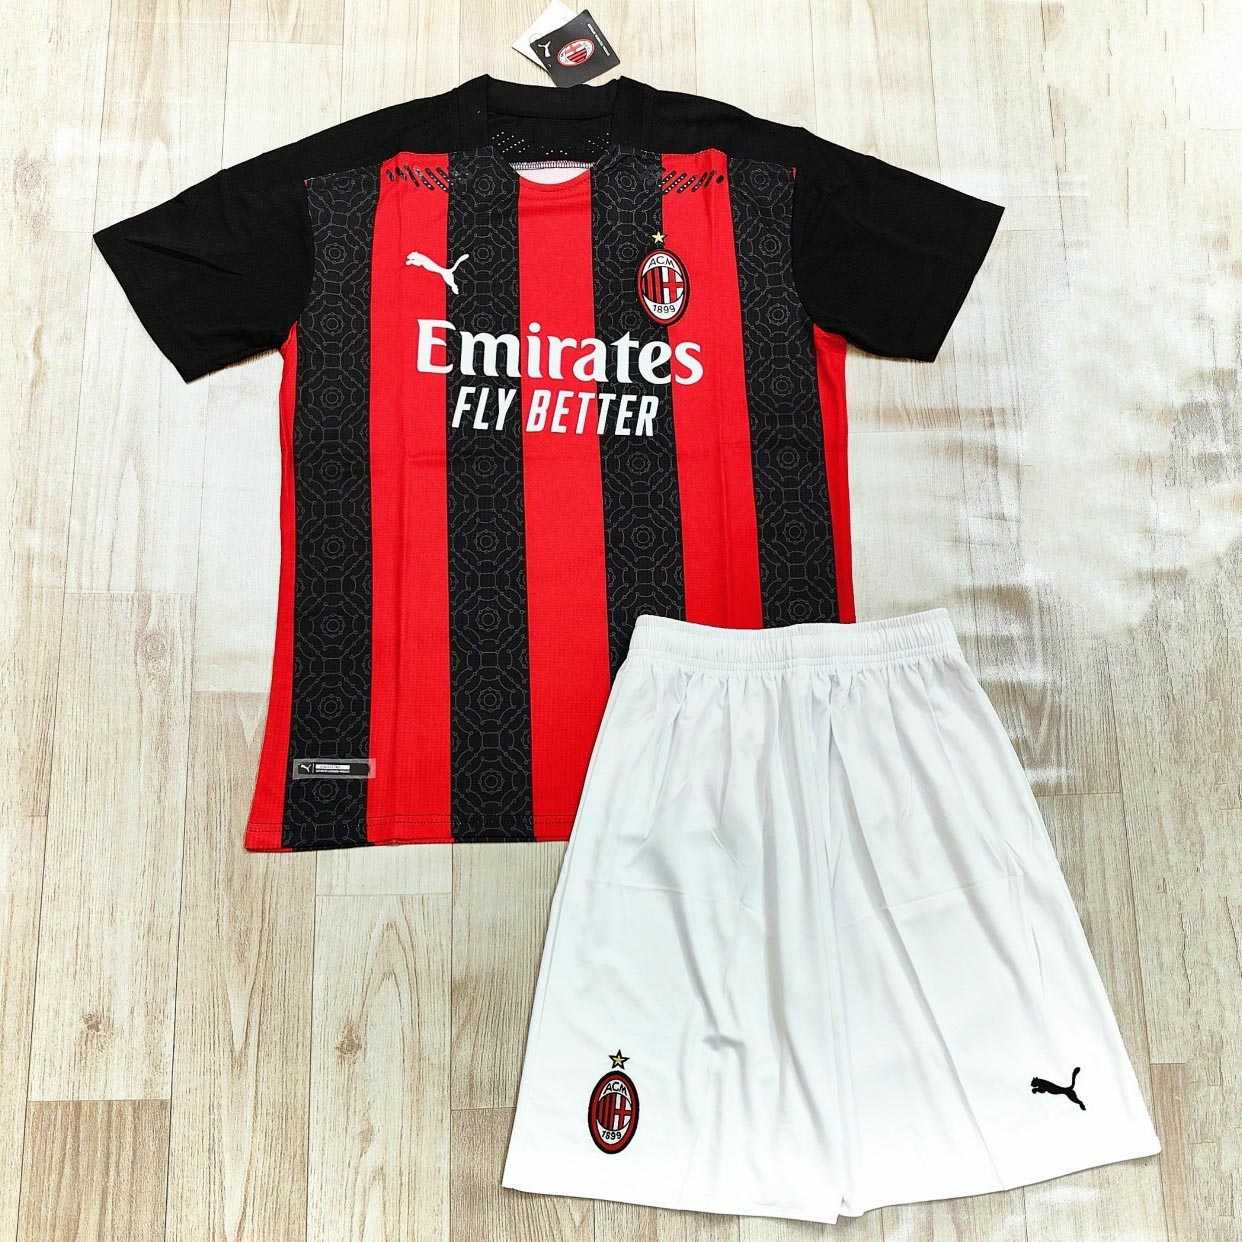 Bộ áo đấu đá banh clb bóng đá Ac Milan kẻ sọc đen đỏ sân nhà mùa 2021 năm 2020 2021 logo thêu hàng thái 1